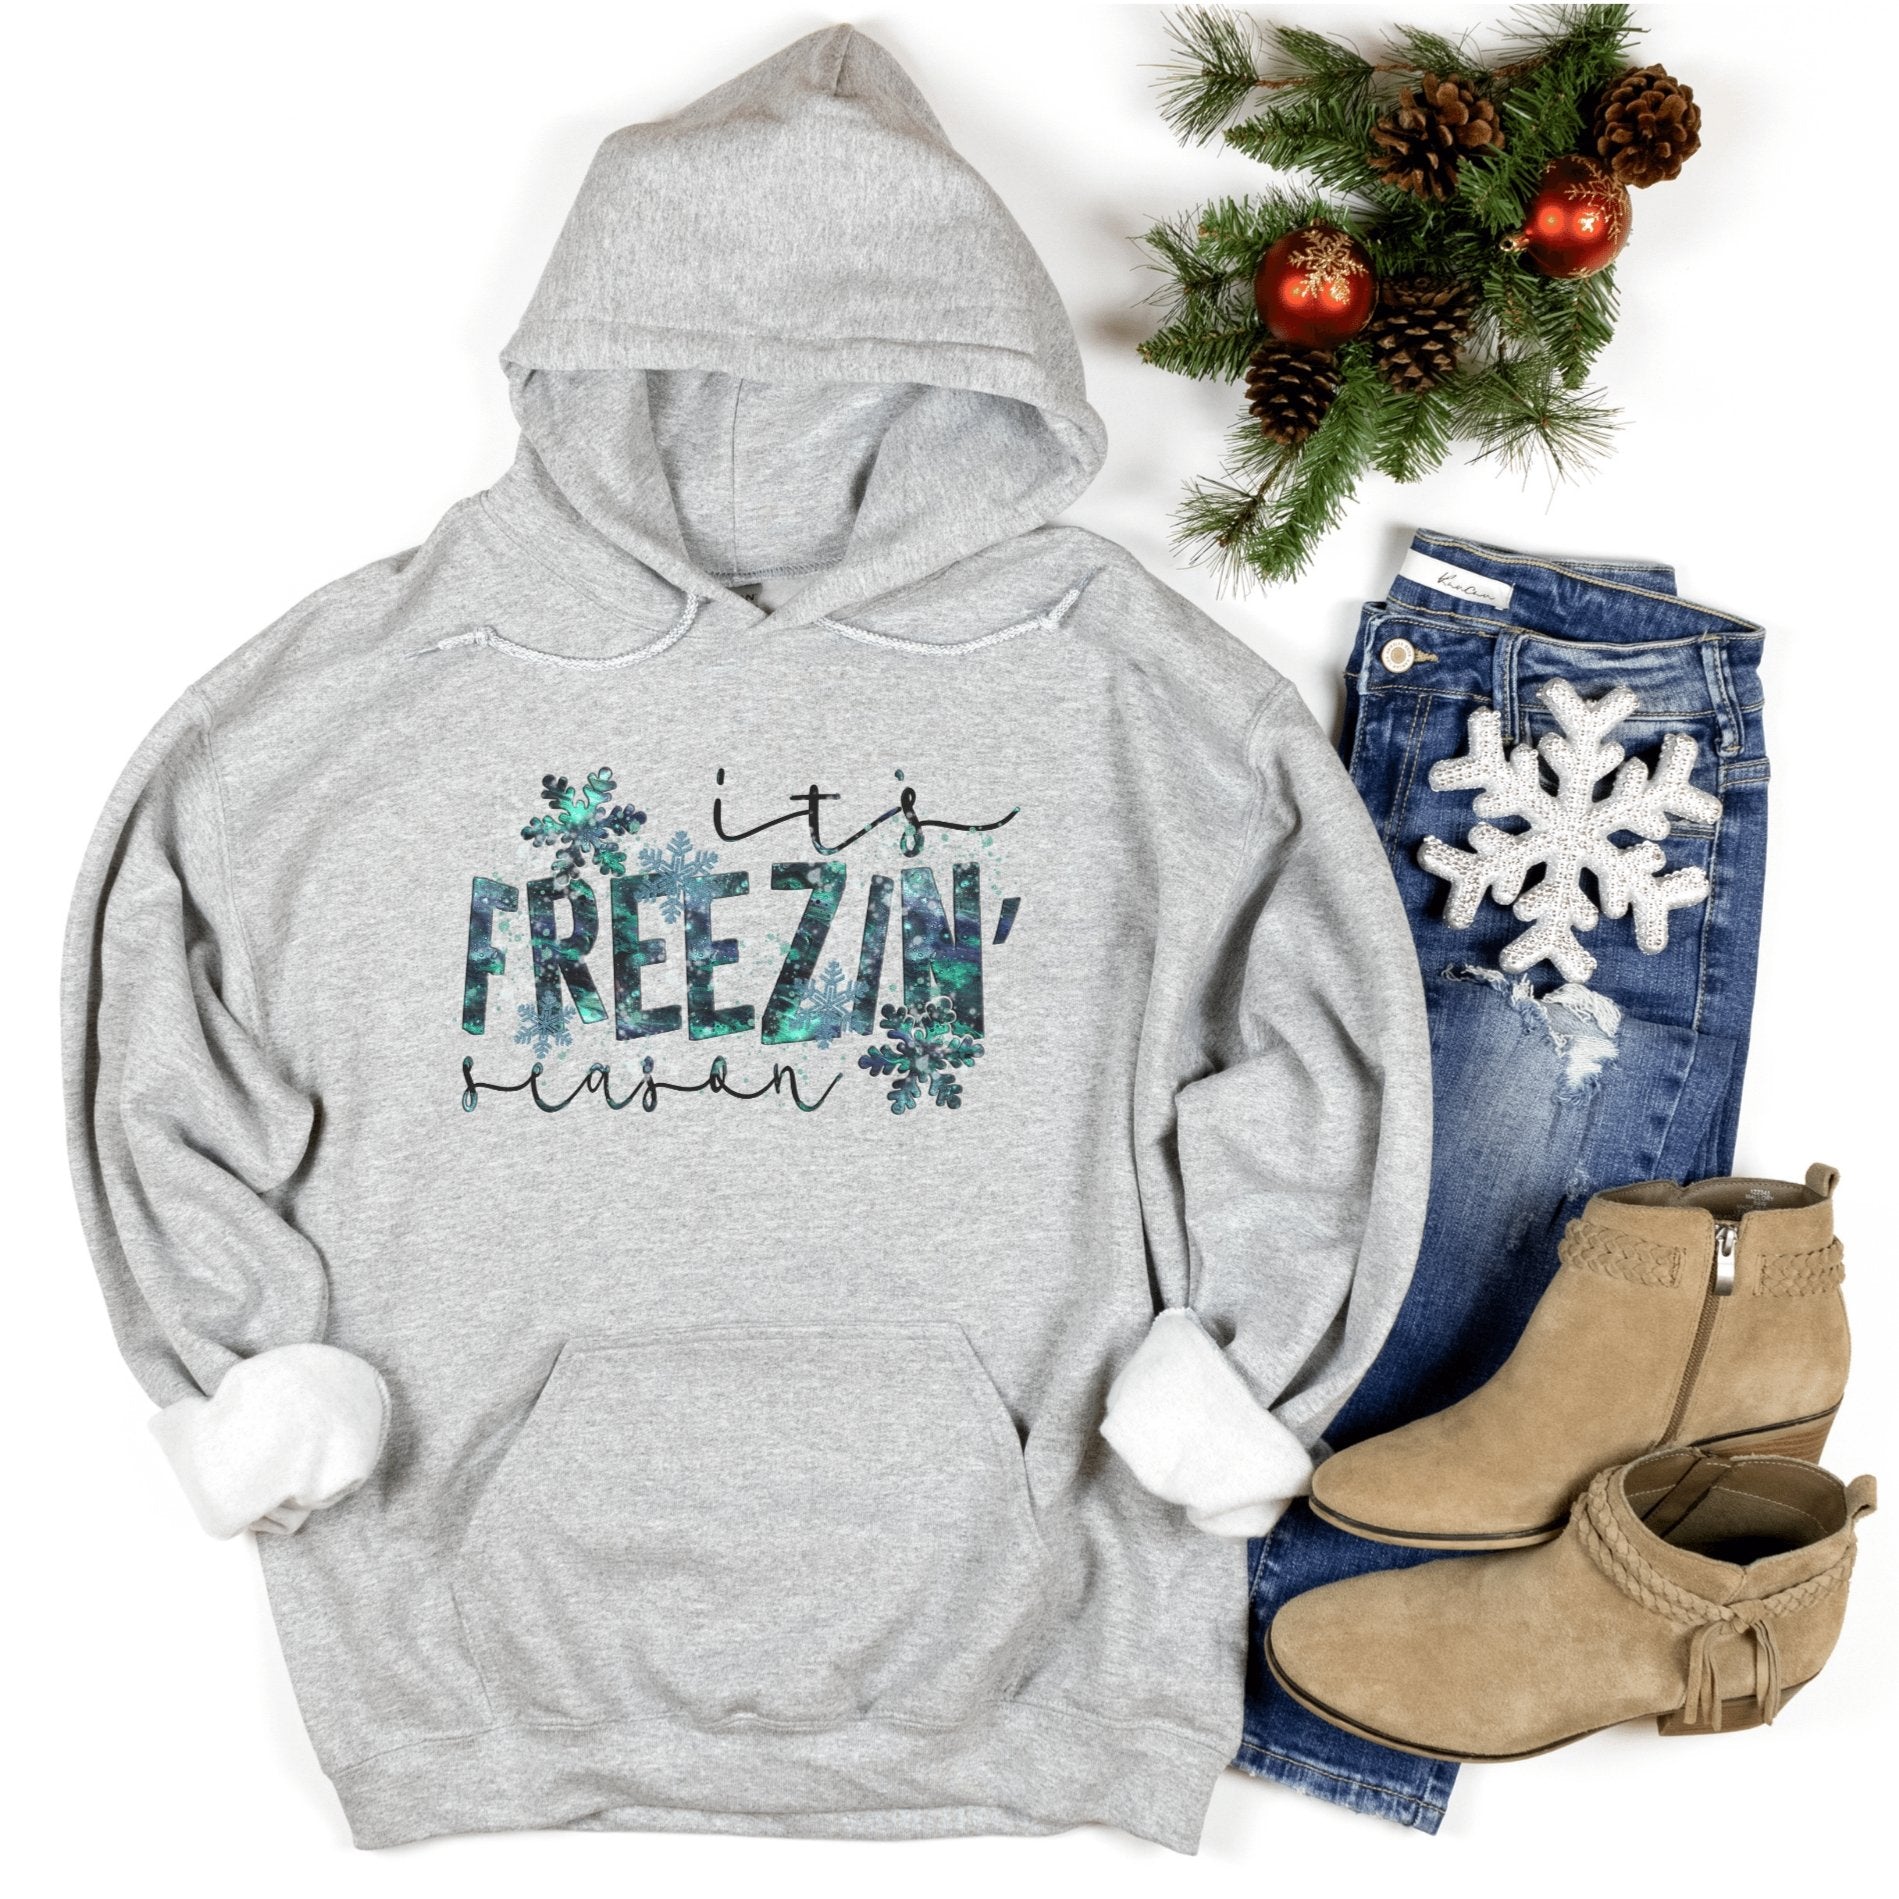 It's Freezin Season Christmas Hoodies - Trendznmore